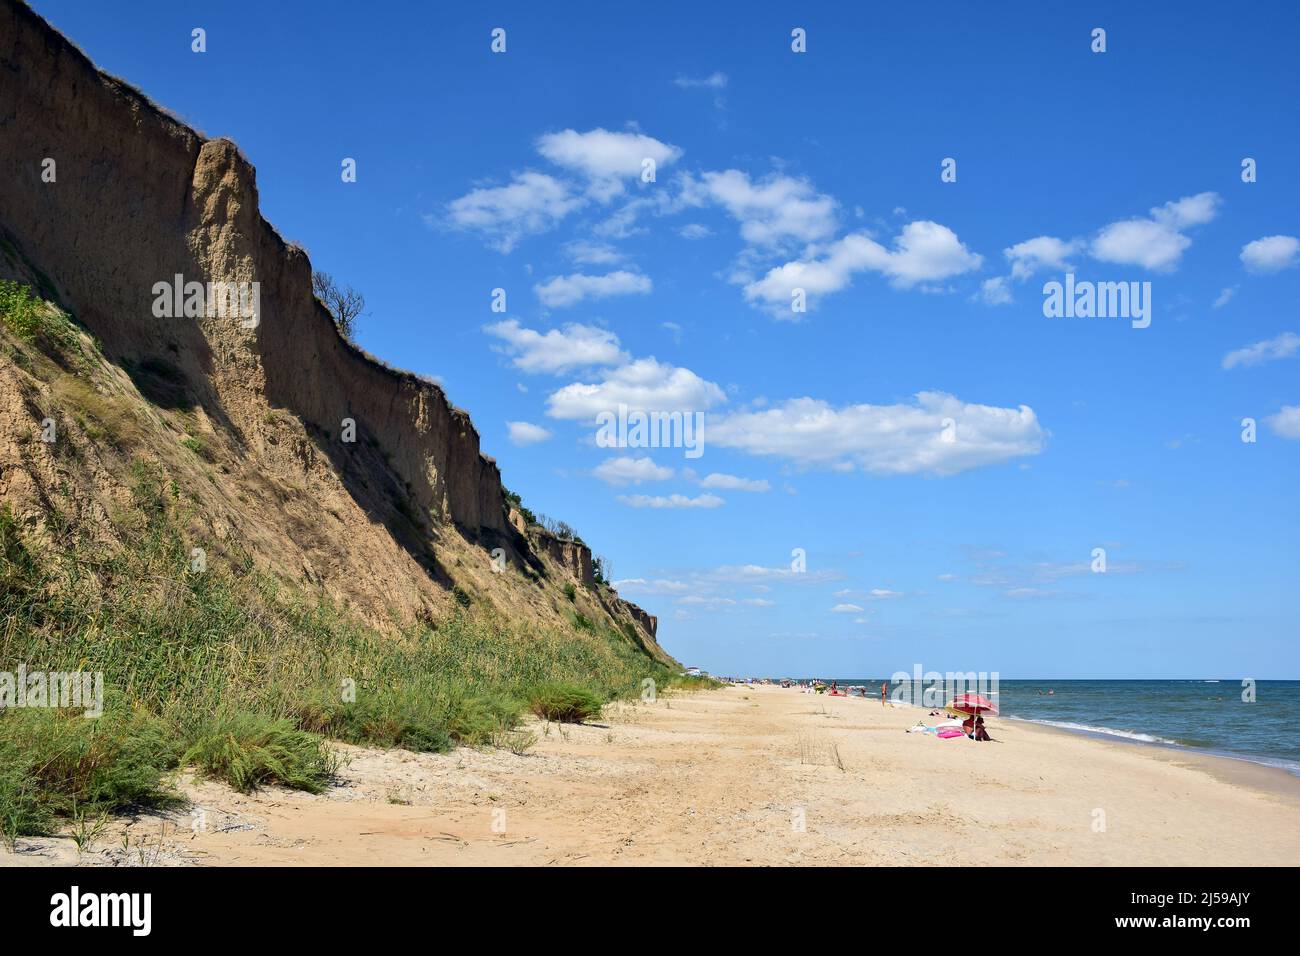 Le onde di mare schiumose rotolano sulla spiaggia di sabbia diurna. I turisti si prendono il sole e nuotano in lontananza Foto Stock